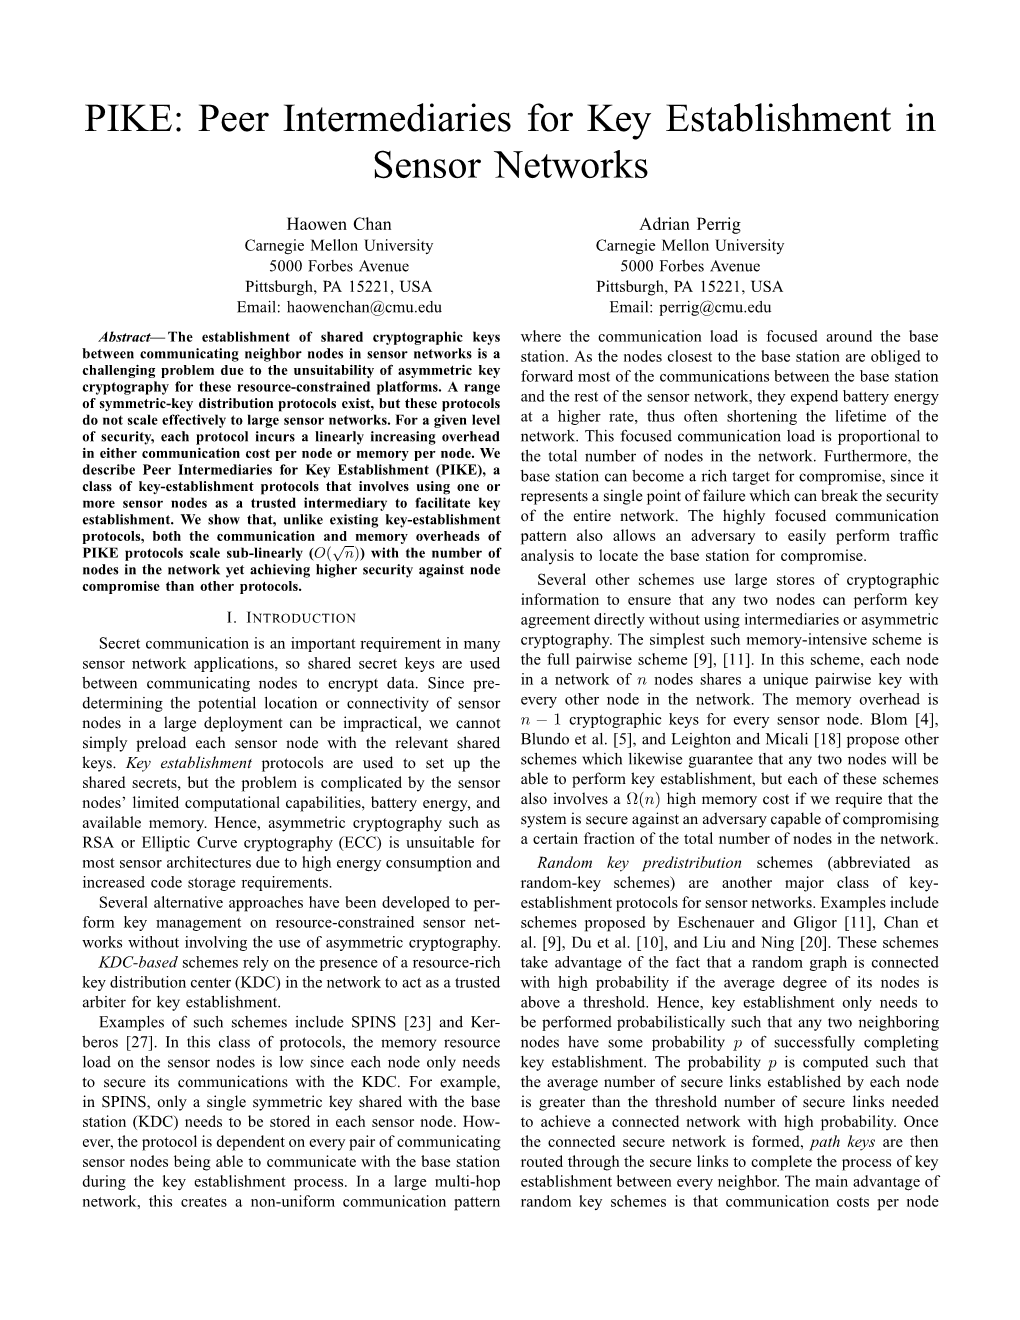 PIKE: Peer Intermediaries for Key Establishment in Sensor Networks